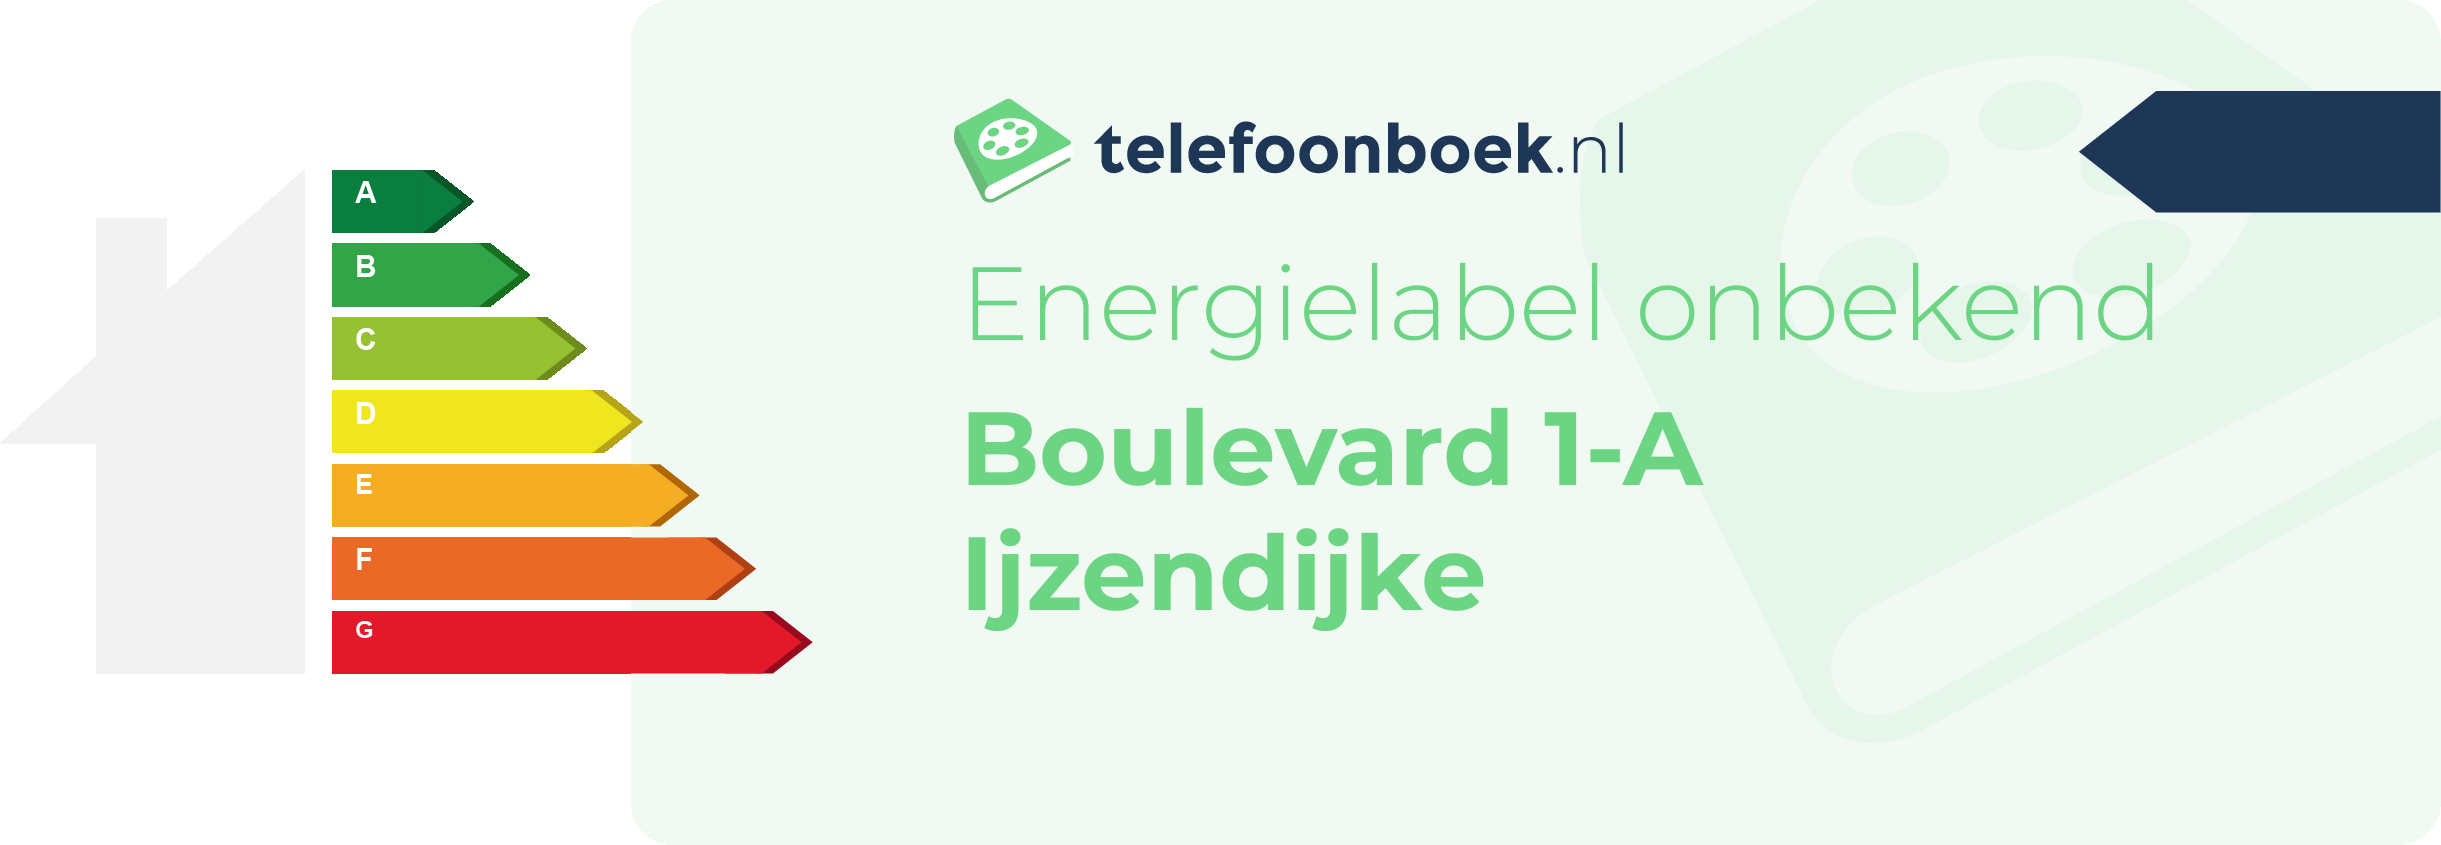 Energielabel Boulevard 1-A Ijzendijke